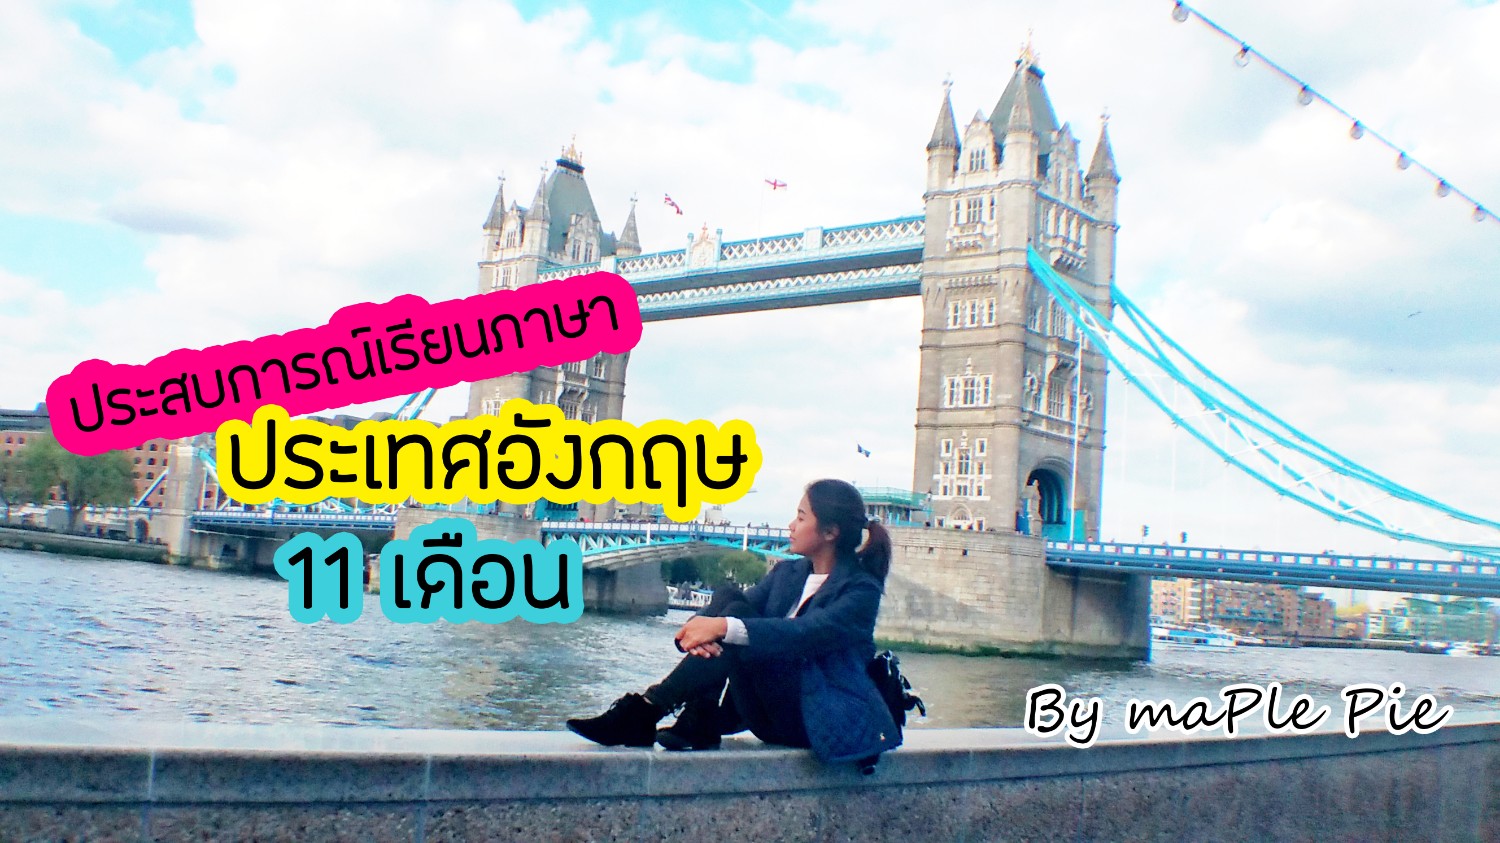 ประสบการณ์เรียนภาษาอังกฤษที่ลอนดอน - Pantip